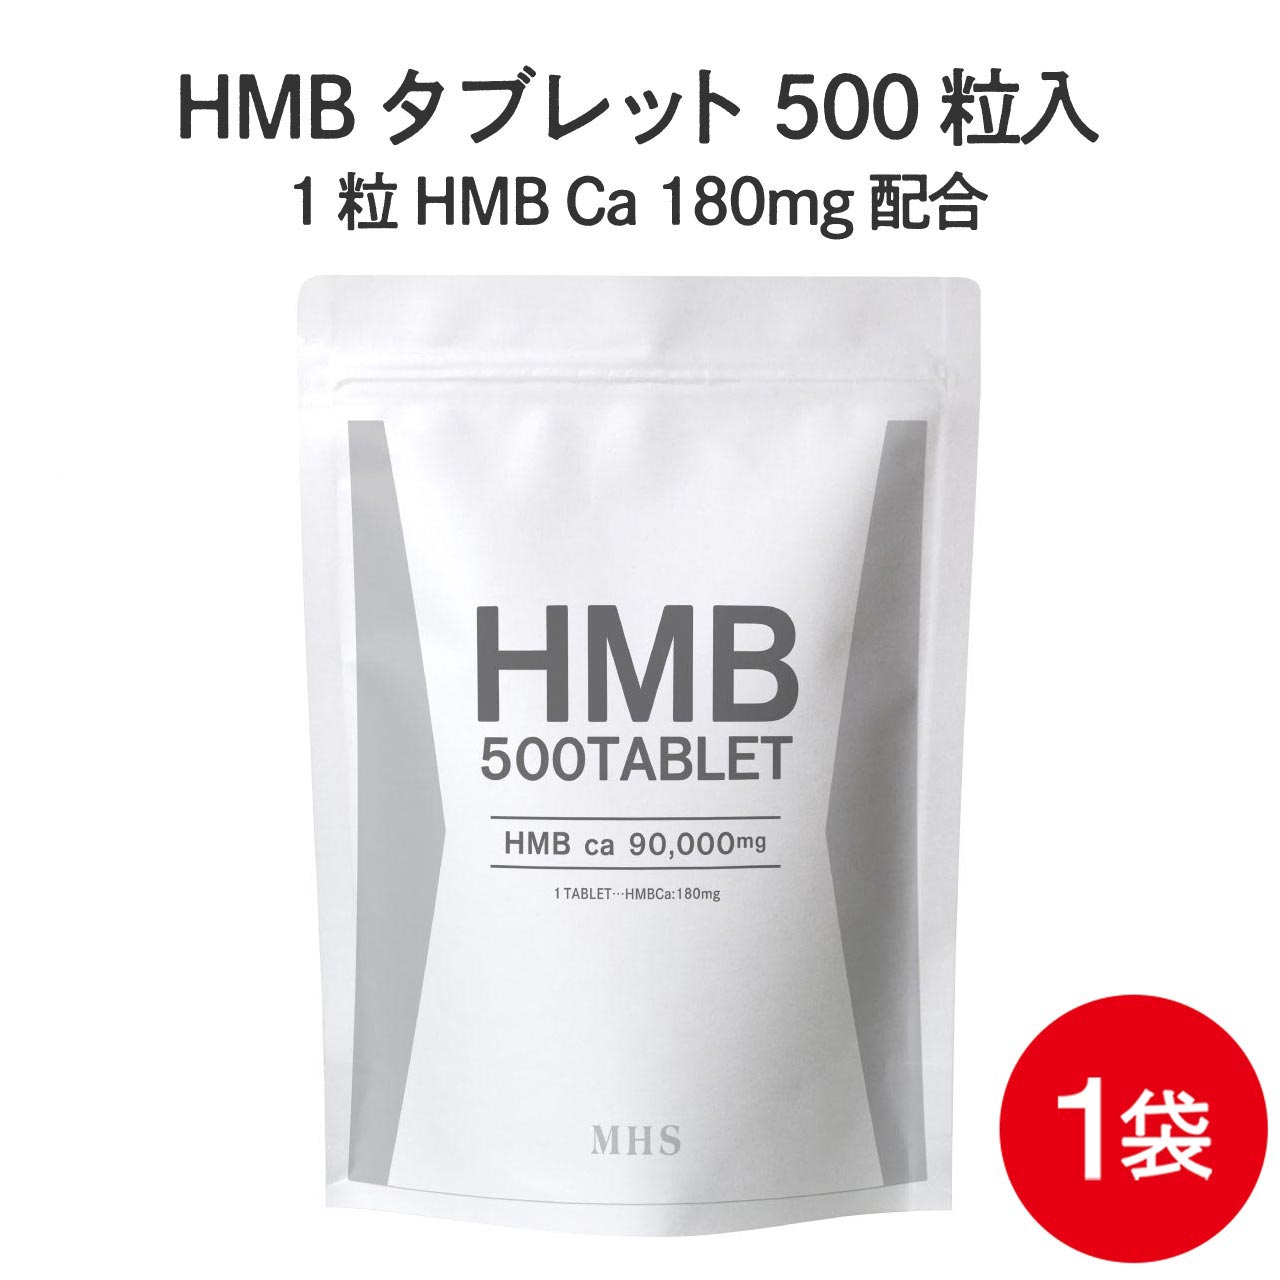 HMB サプリ タブレット 1袋 500粒 約1ヶ月分 コスパ抜群 HMBカルシウム プロテイン BCAA クレアチン と..